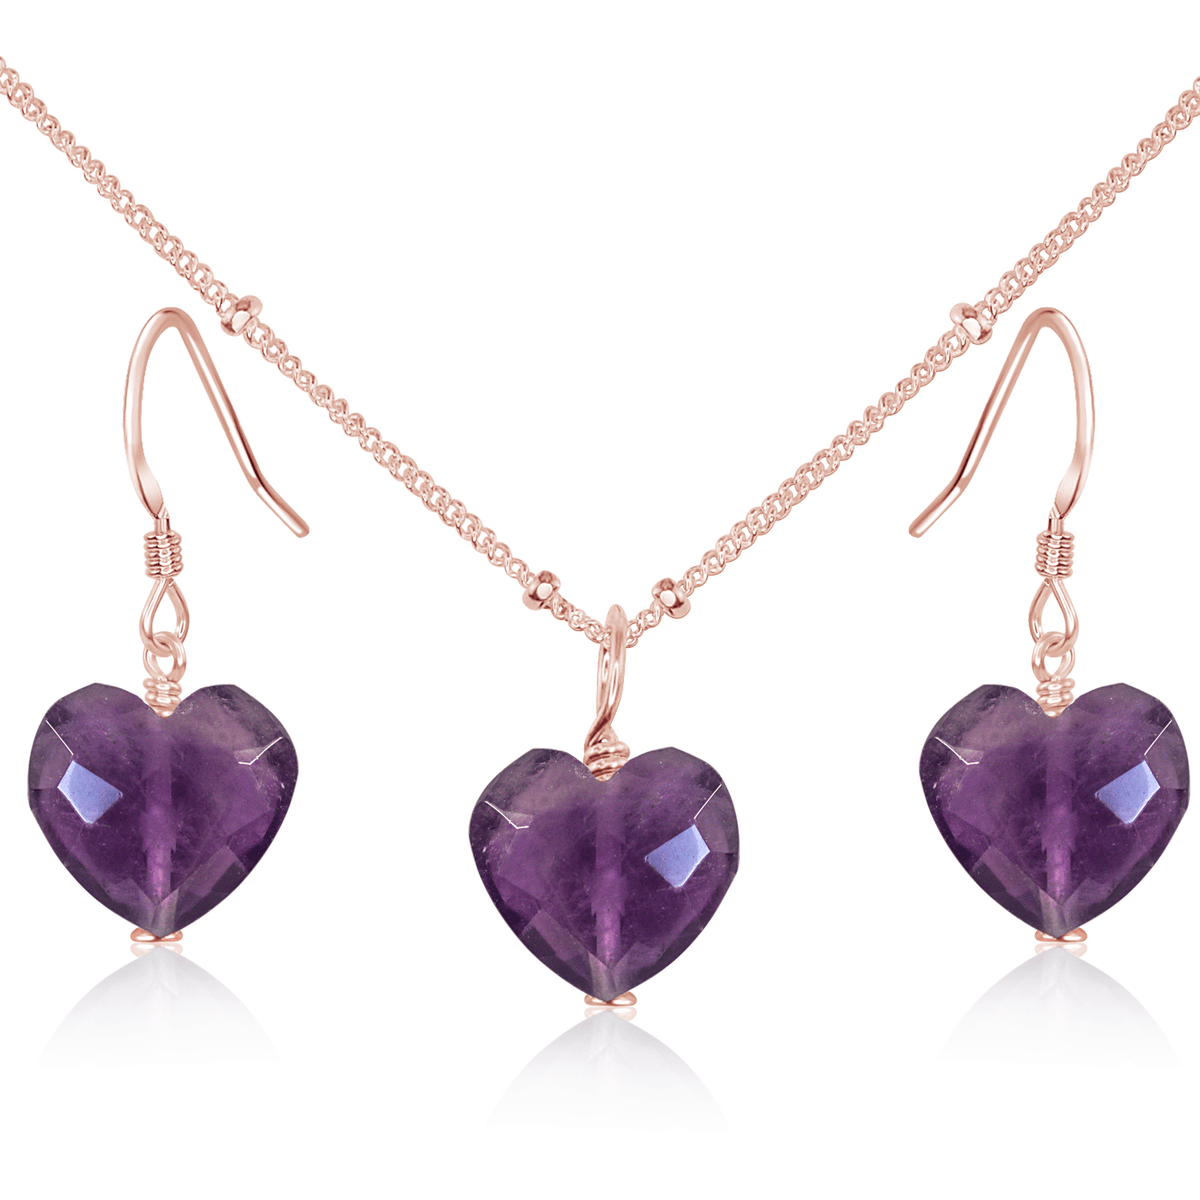 Amethyst Crystal Heart Jewellery Set - Amethyst Crystal Heart Jewellery Set - 14k Rose Gold Fill / Satellite / Necklace & Earrings - Luna Tide Handmade Crystal Jewellery